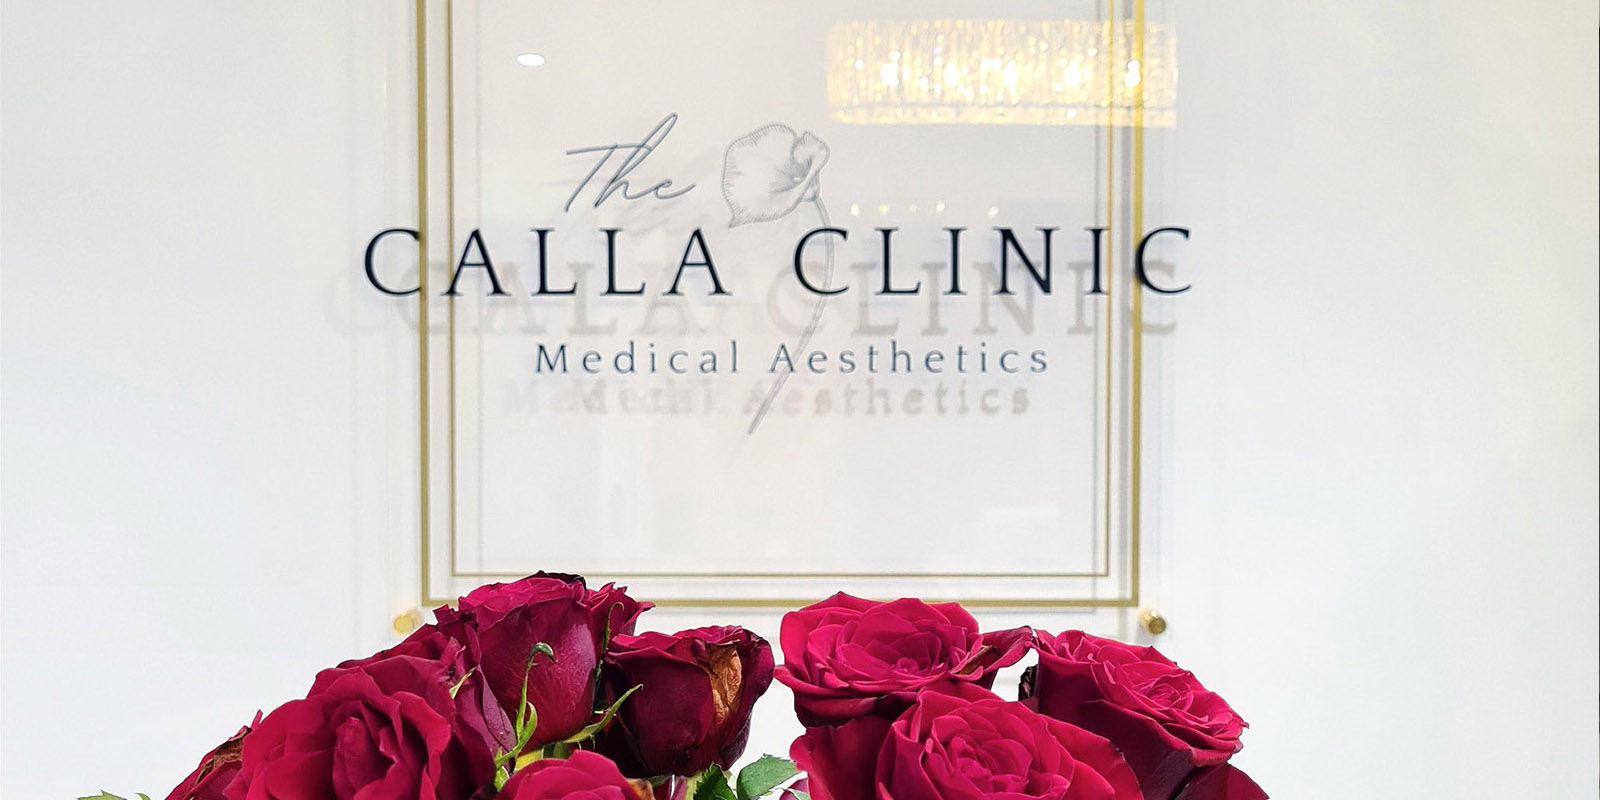 The Calla Clinic